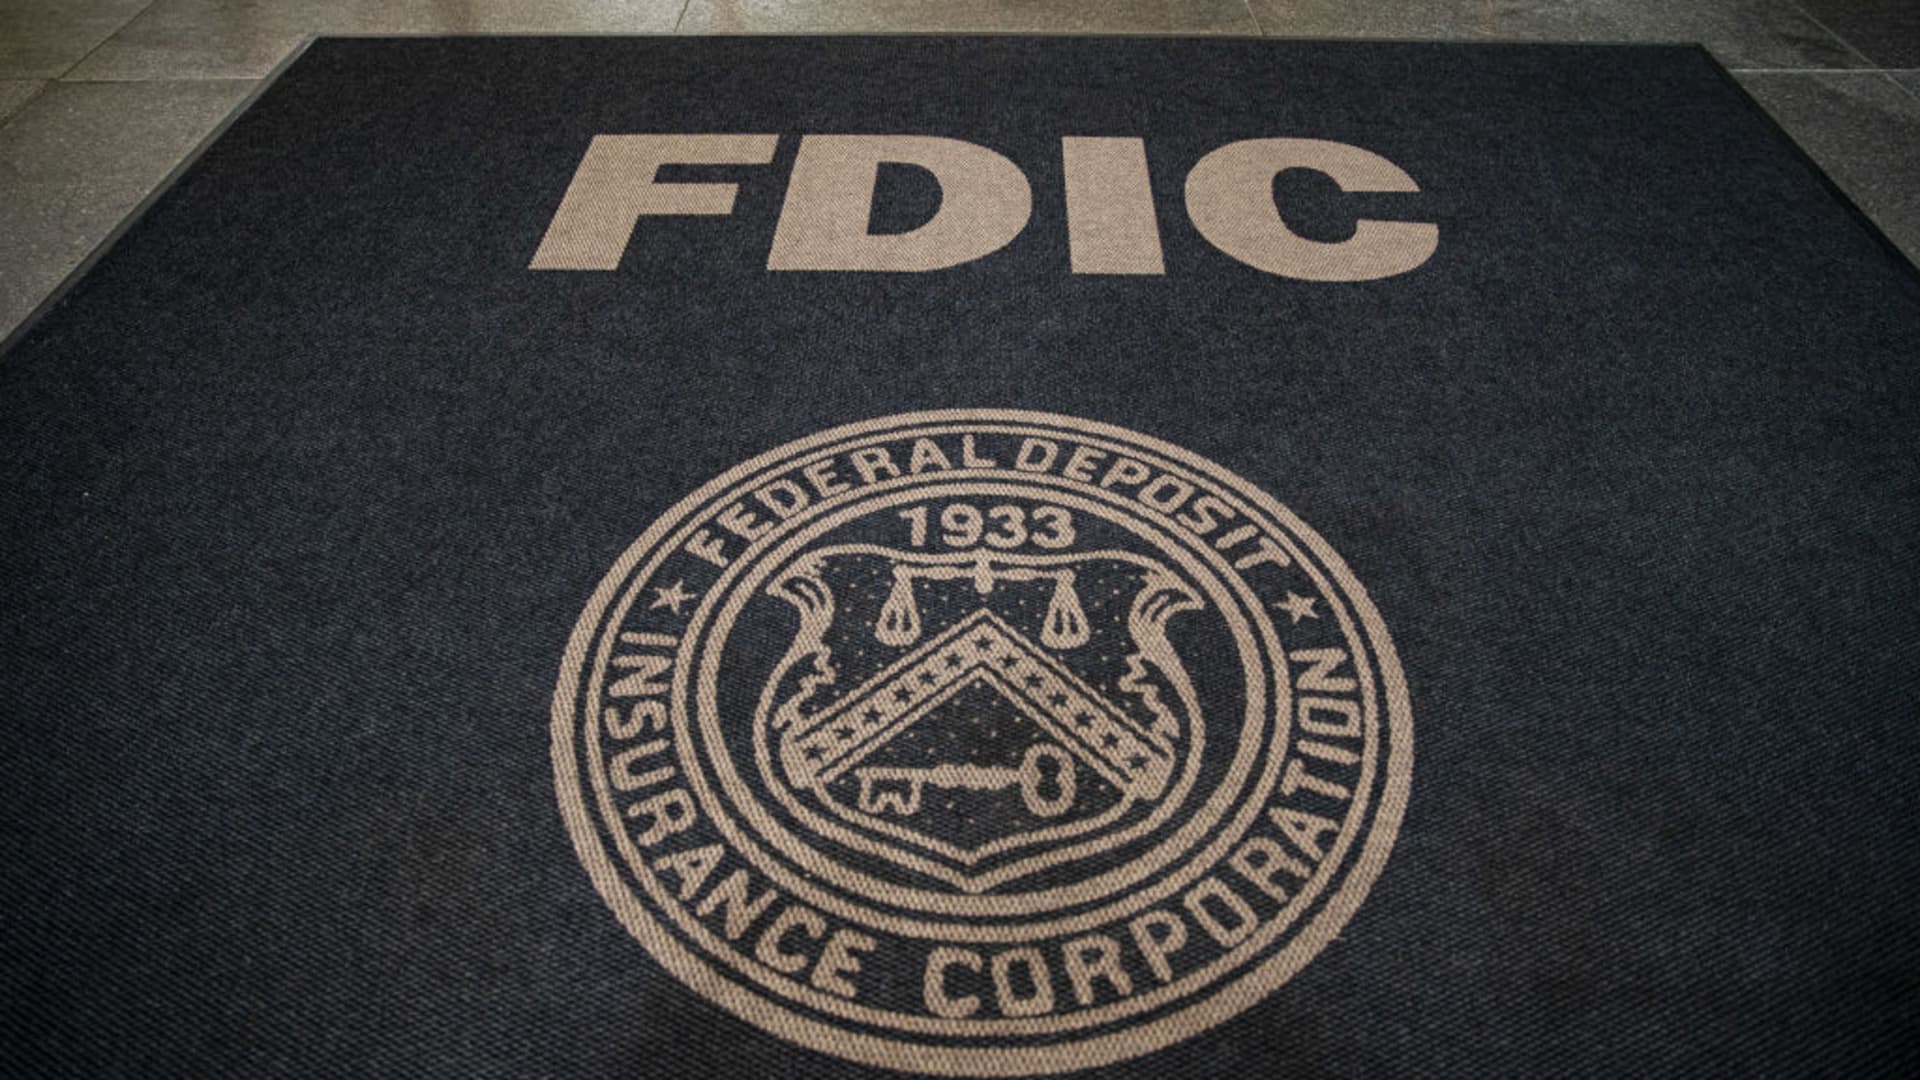 अमेरिकी सांसद उच्च FDIC बैंक डिपॉजिट इंश्योरेंस कैप की खूबियों की जांच करेंगे